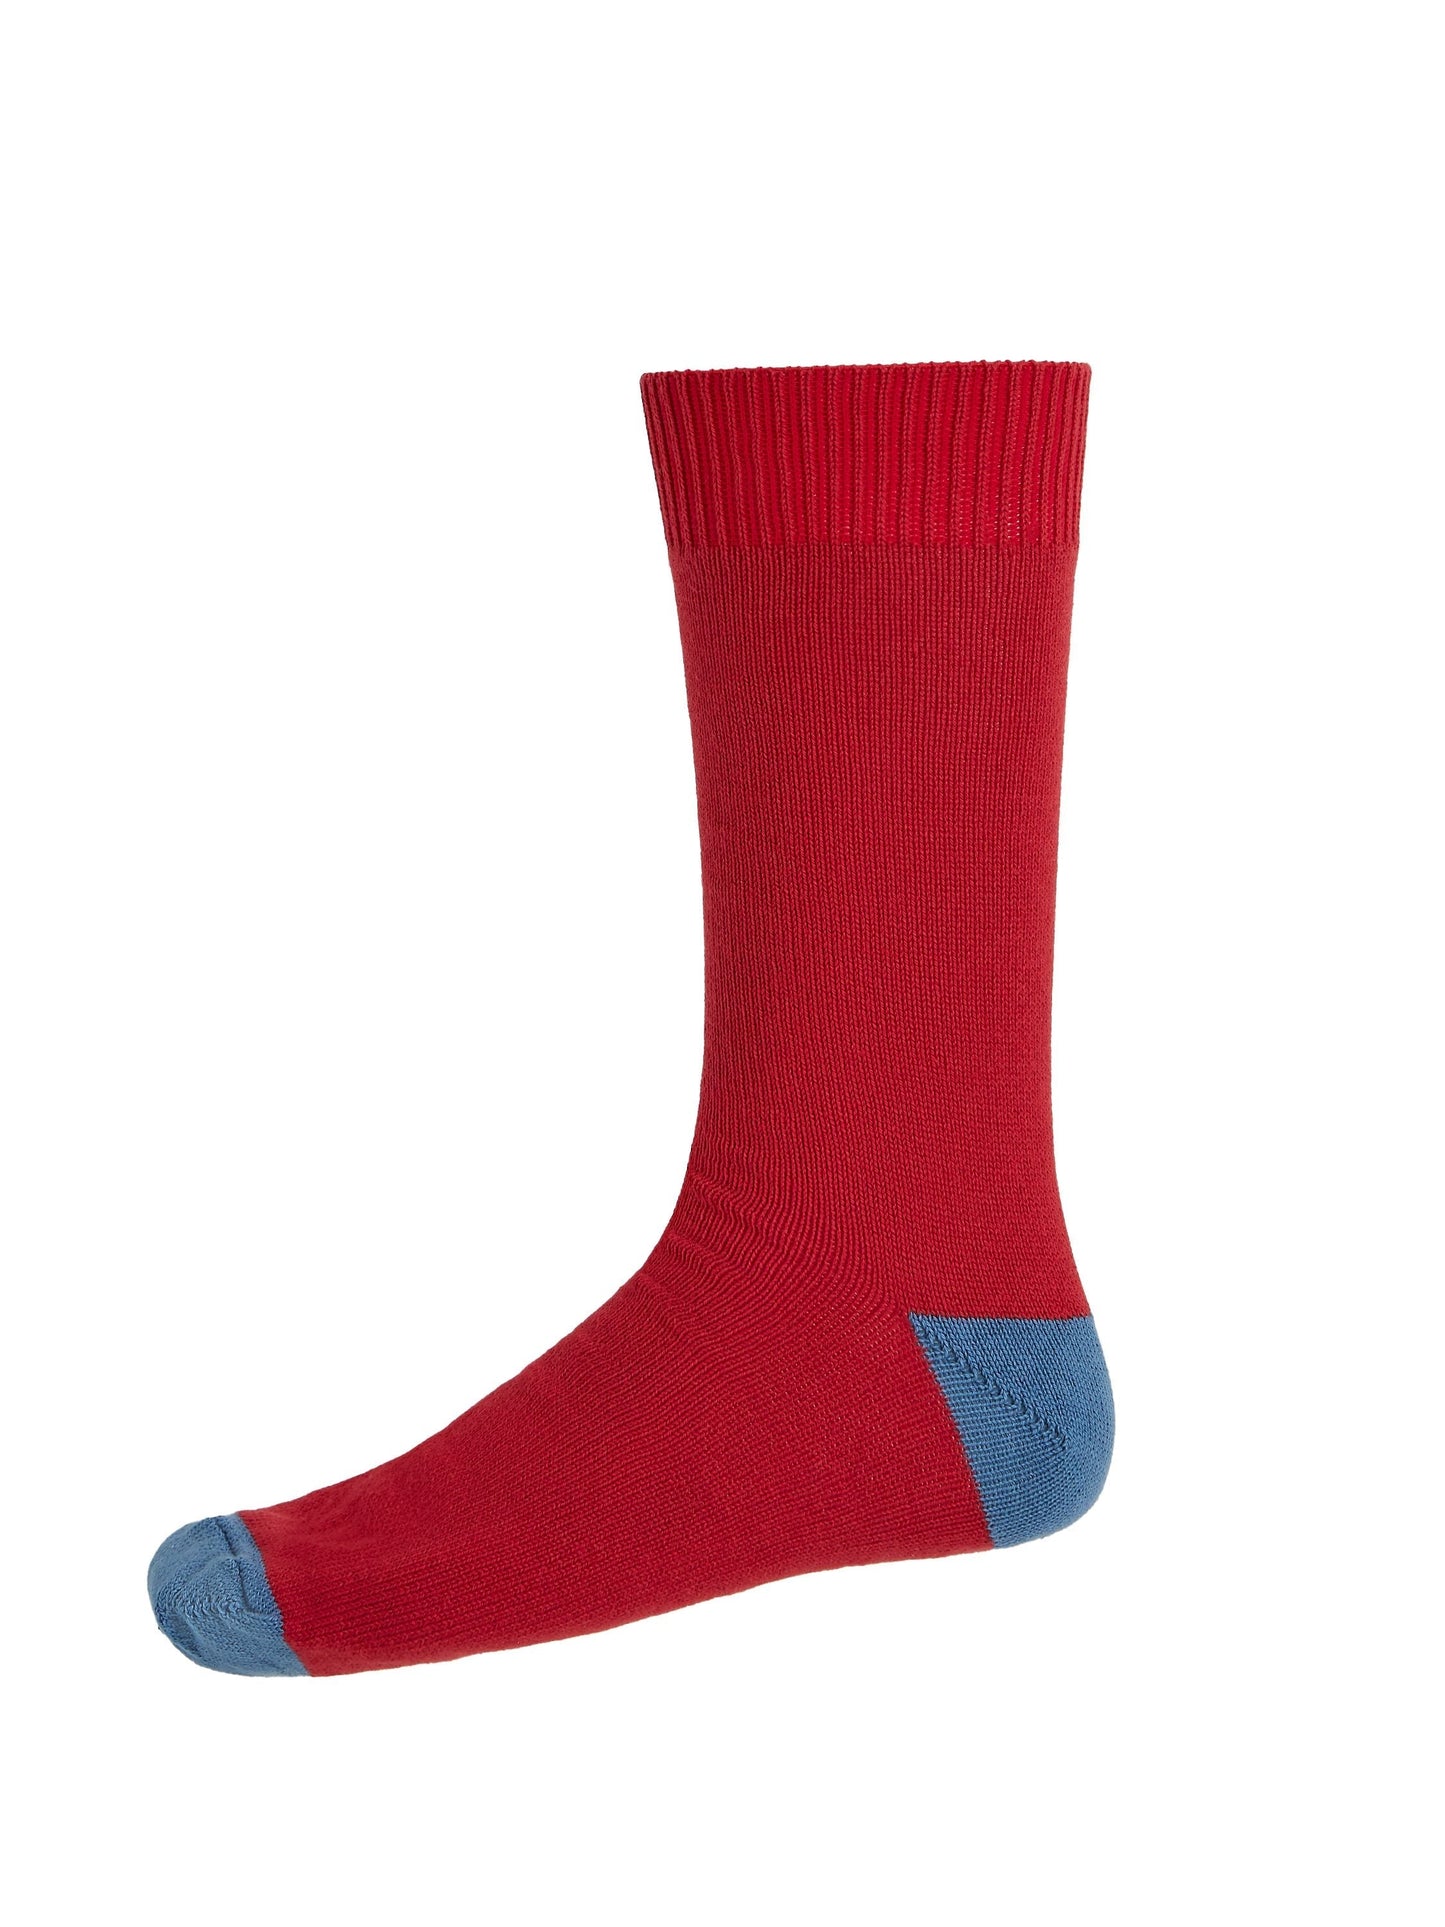 Heel and Toe Socks Redcurrant/Cornflour